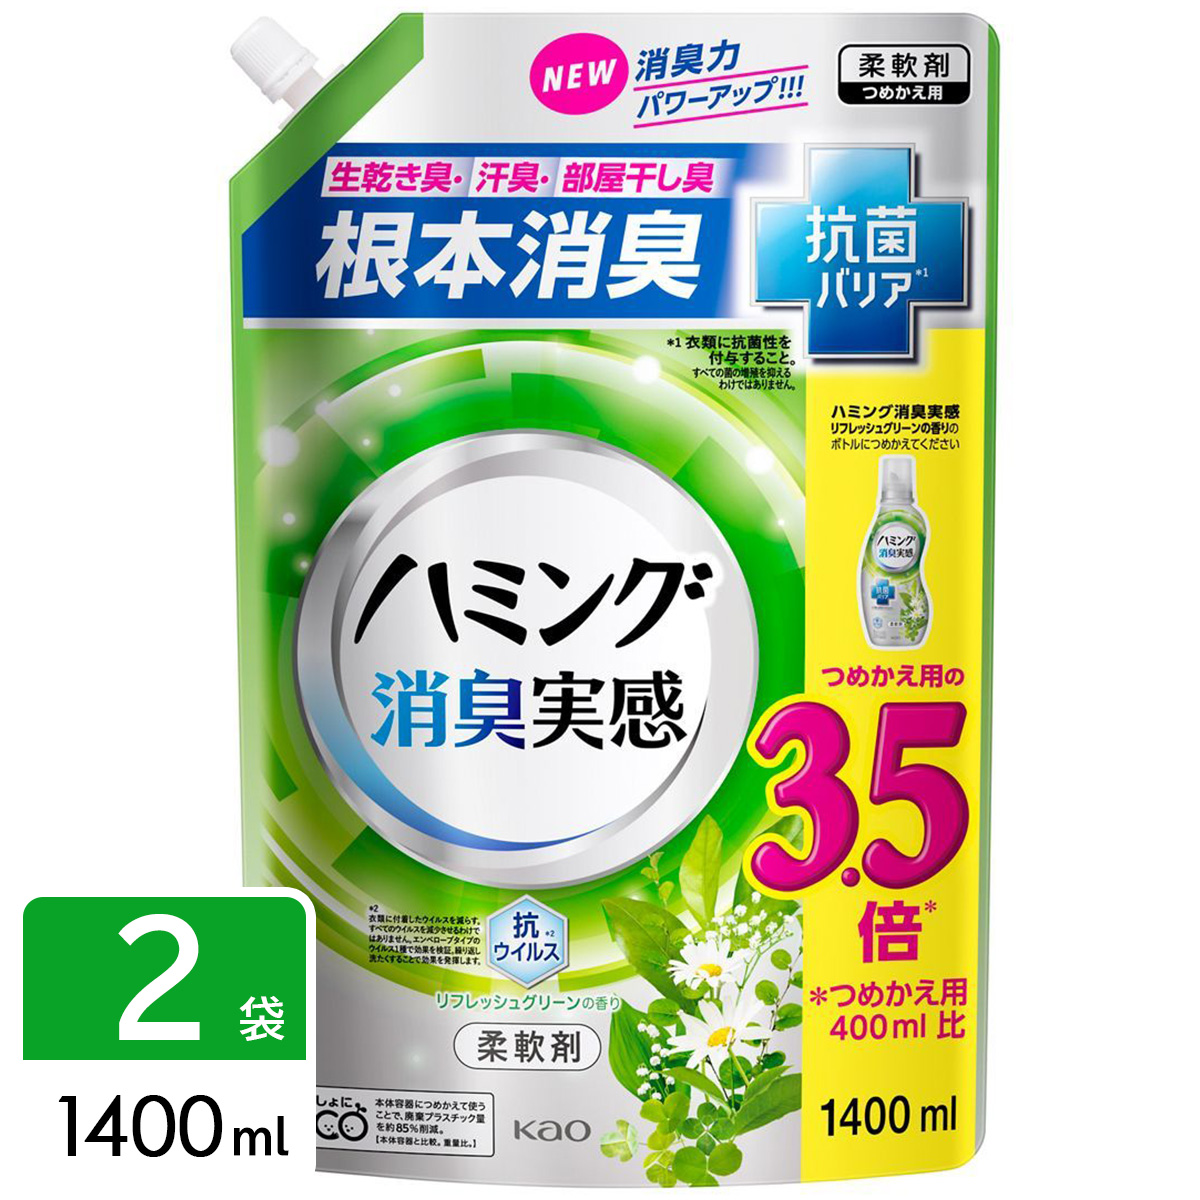 ハミング 消臭実感 柔軟剤 リフレッシュグリーンの香り 1400ml ×2袋